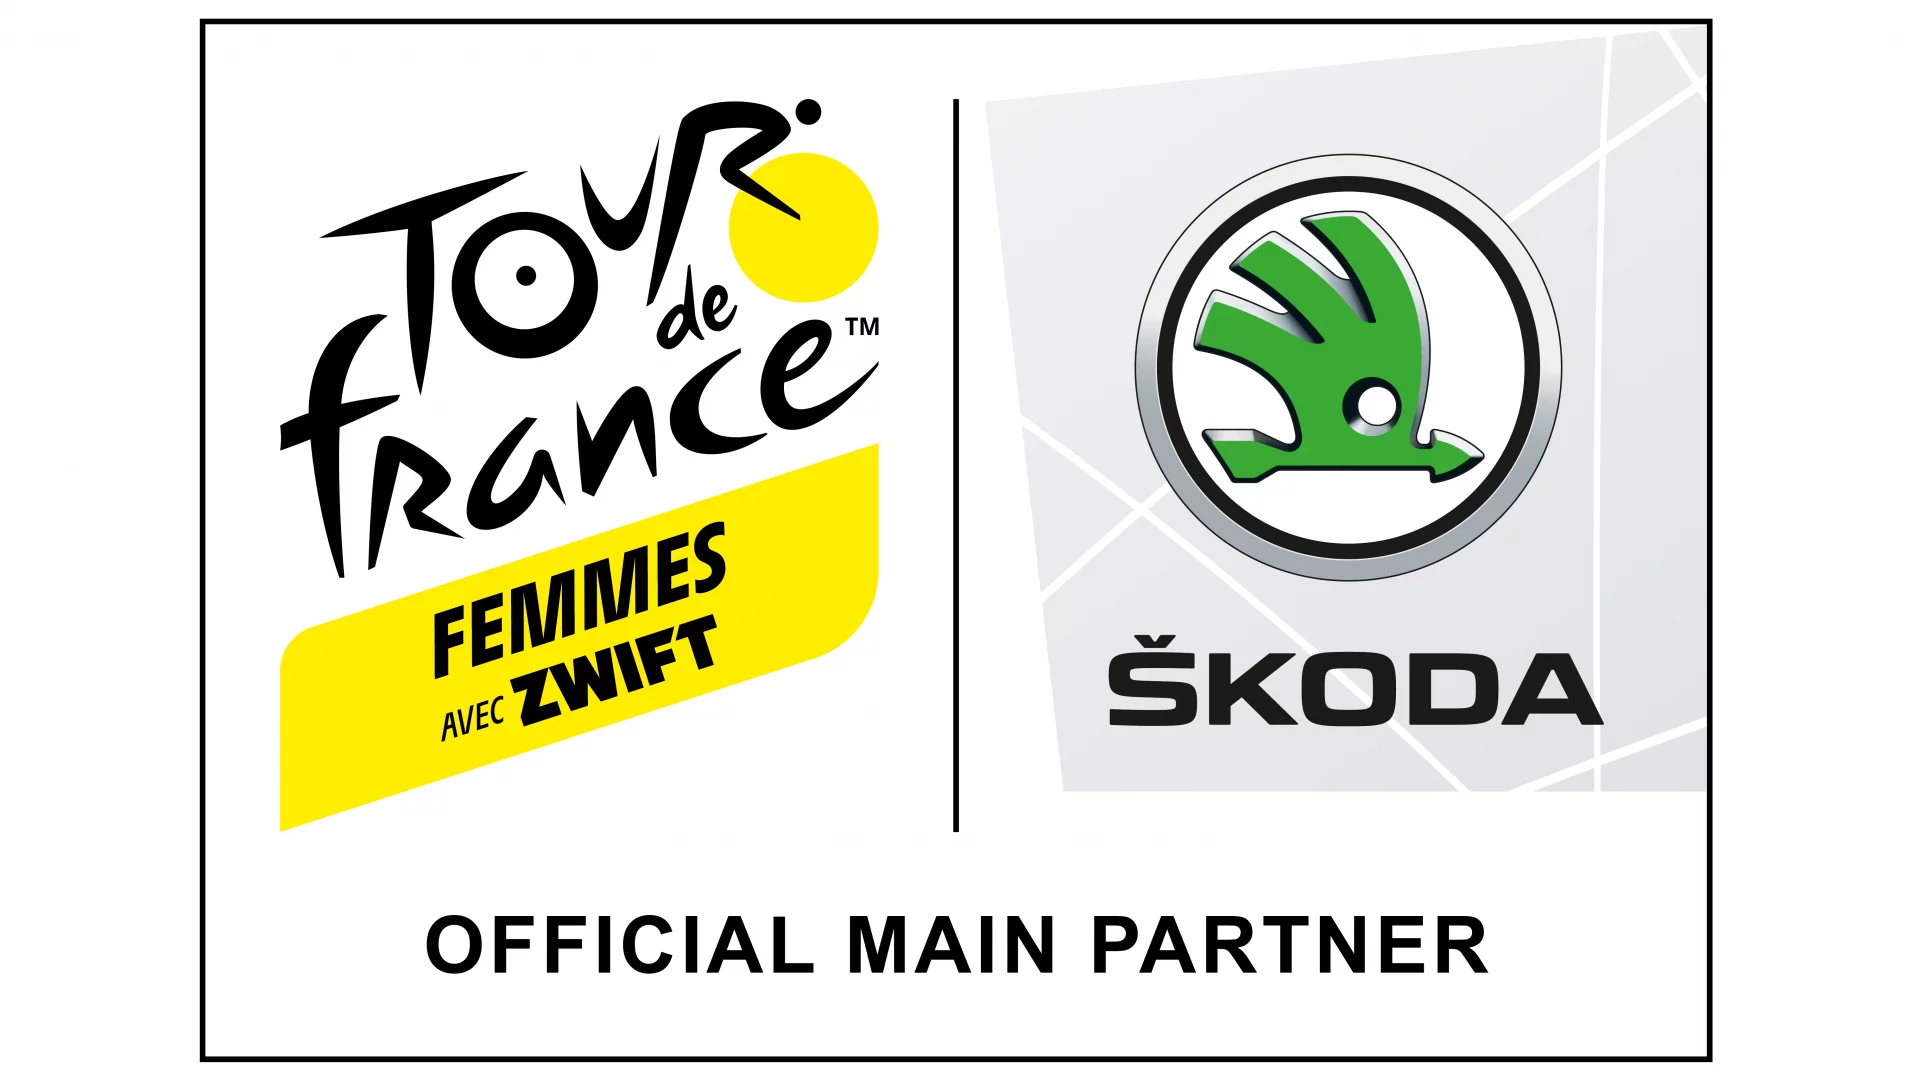 Tour-de-France-Femmes-avec-ZWIFT